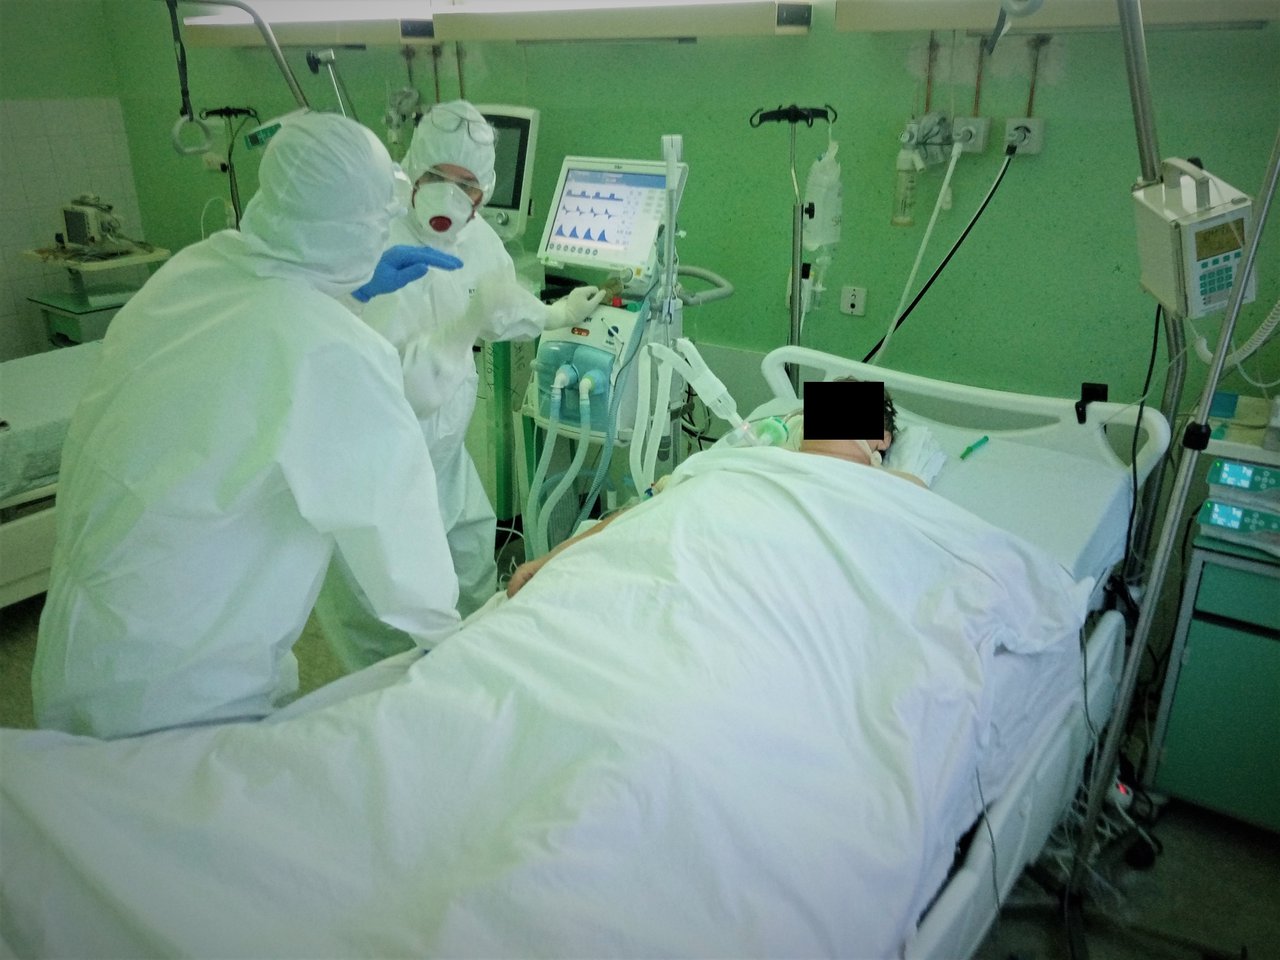 Fotografija: Na bolničkom liječenju je 12 pacijenata/Foto: Deni Marčinković
